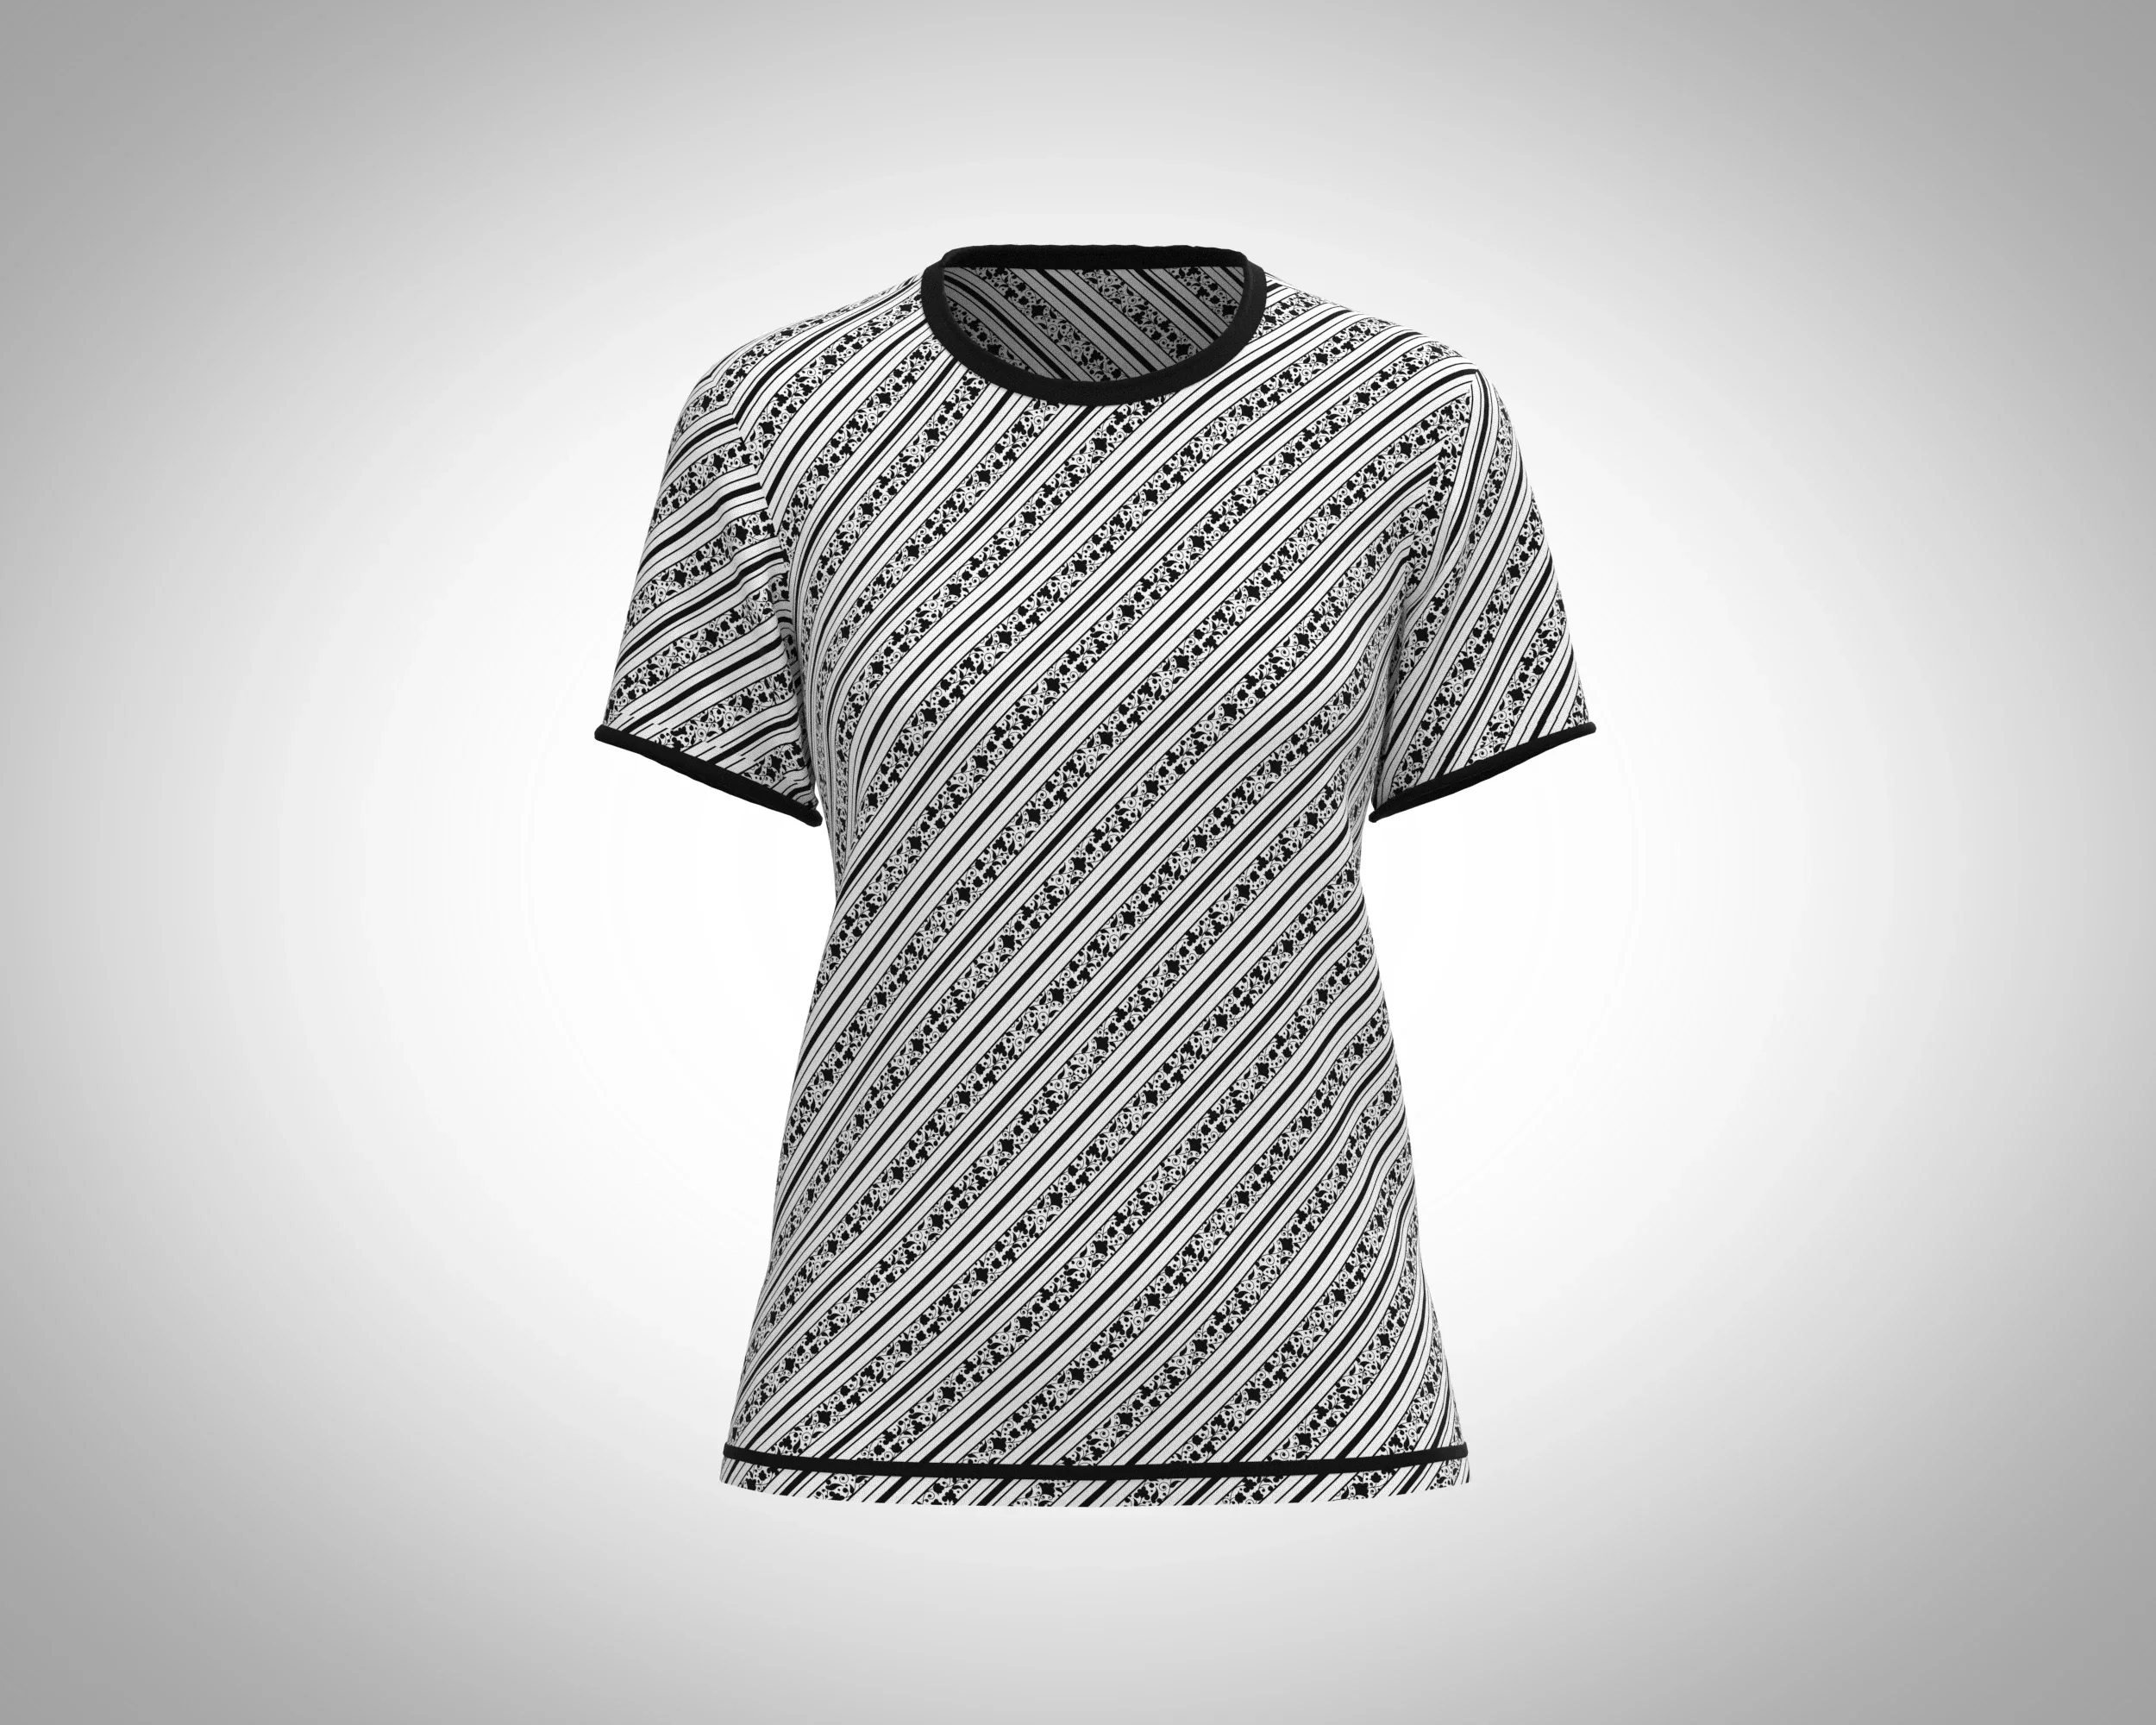 Ladies Black Print T-Shirt | Marvelous / Clo3d / obj / fbx